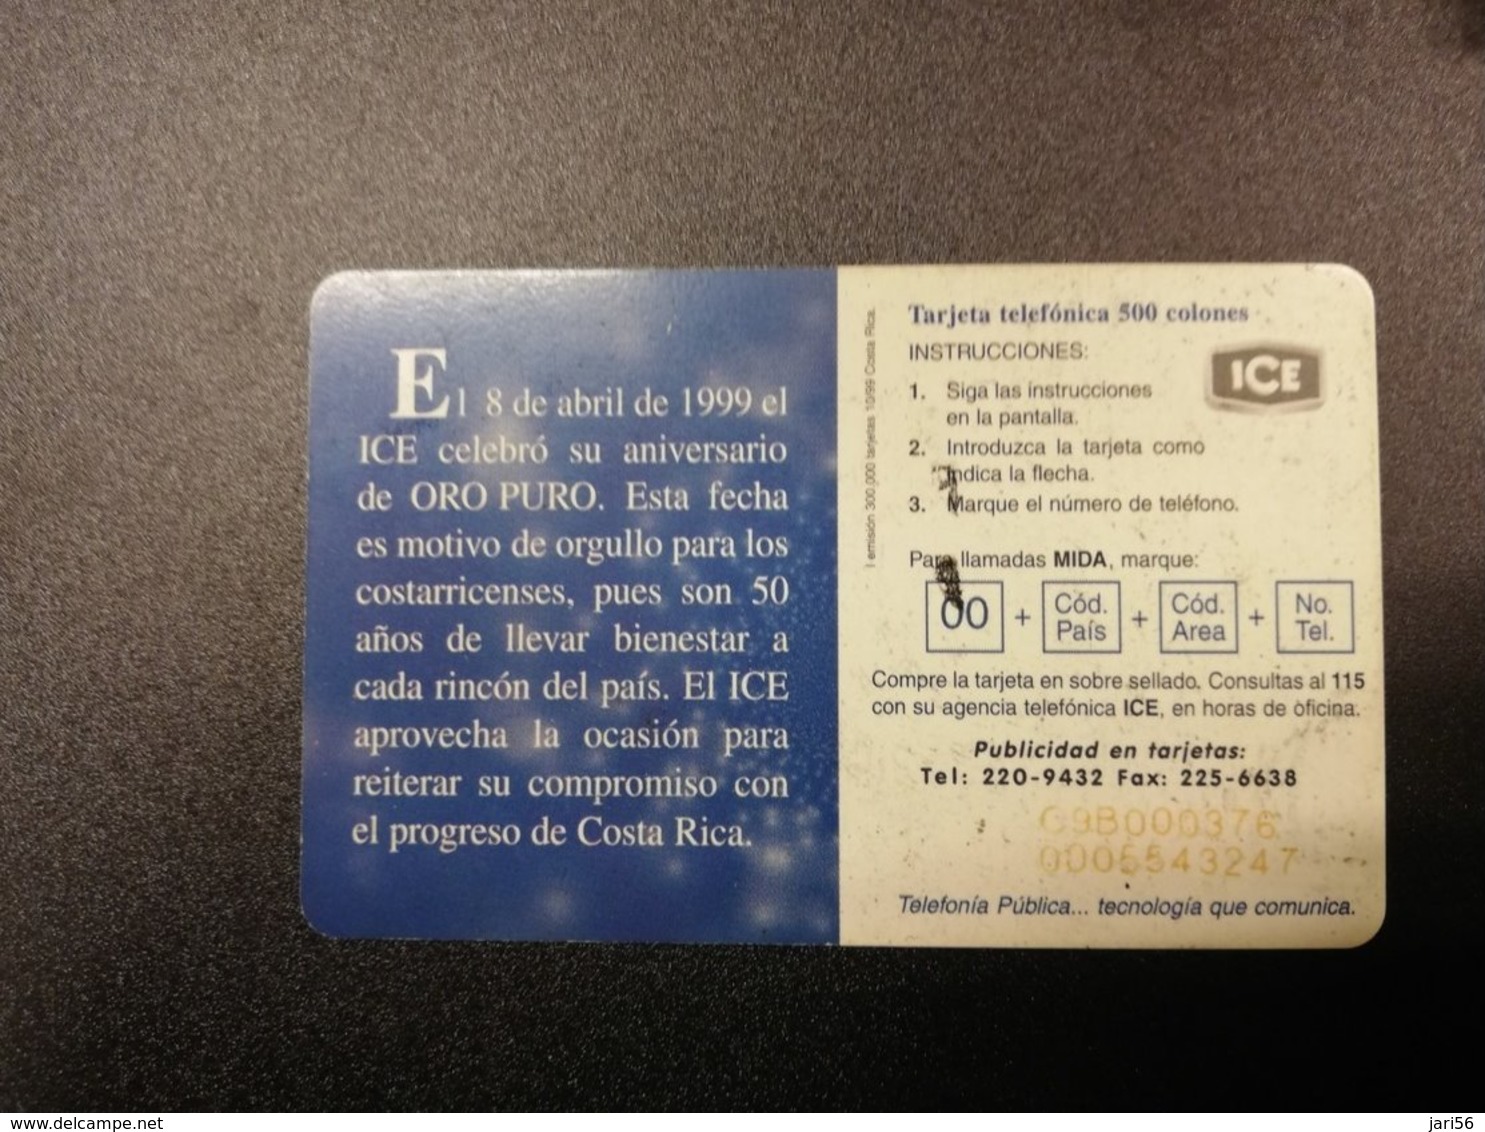 COSTA RICA 500 COLONES   CHIPCARD   Fine Used Card  ** 791** - Costa Rica